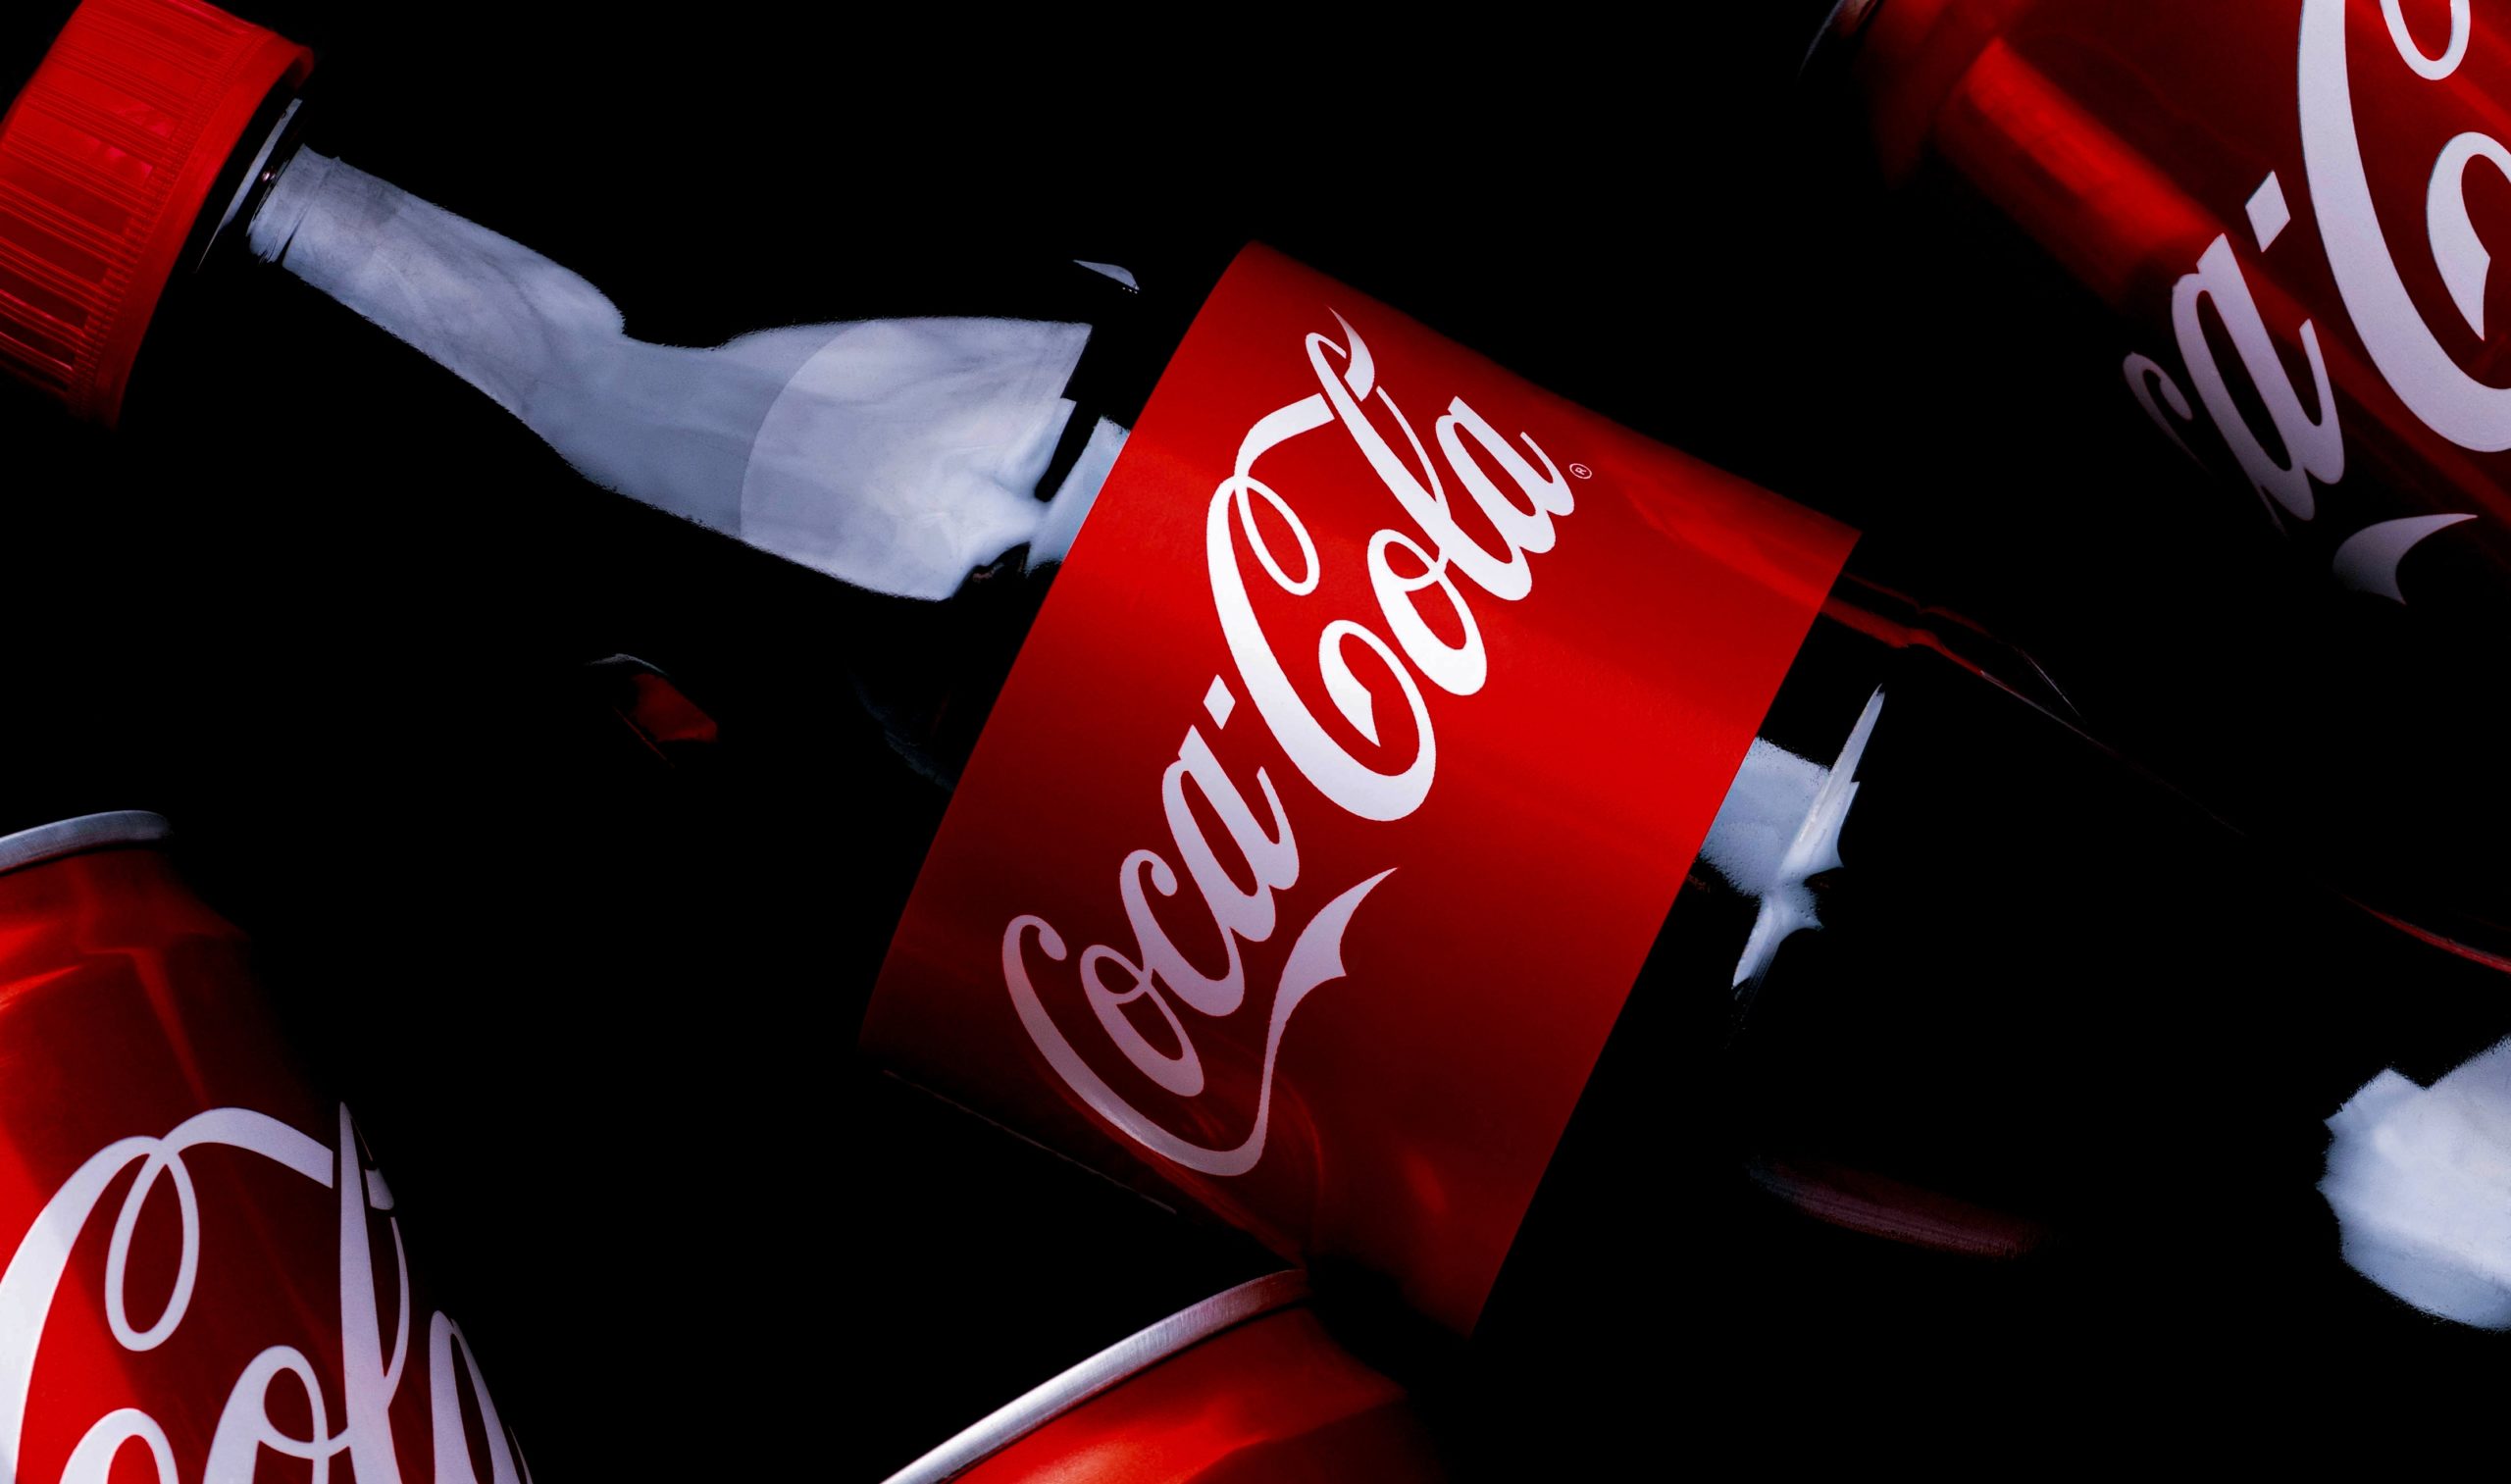 De surpresa! Coca-Cola anuncia mudança e deixa brasileiros no limite